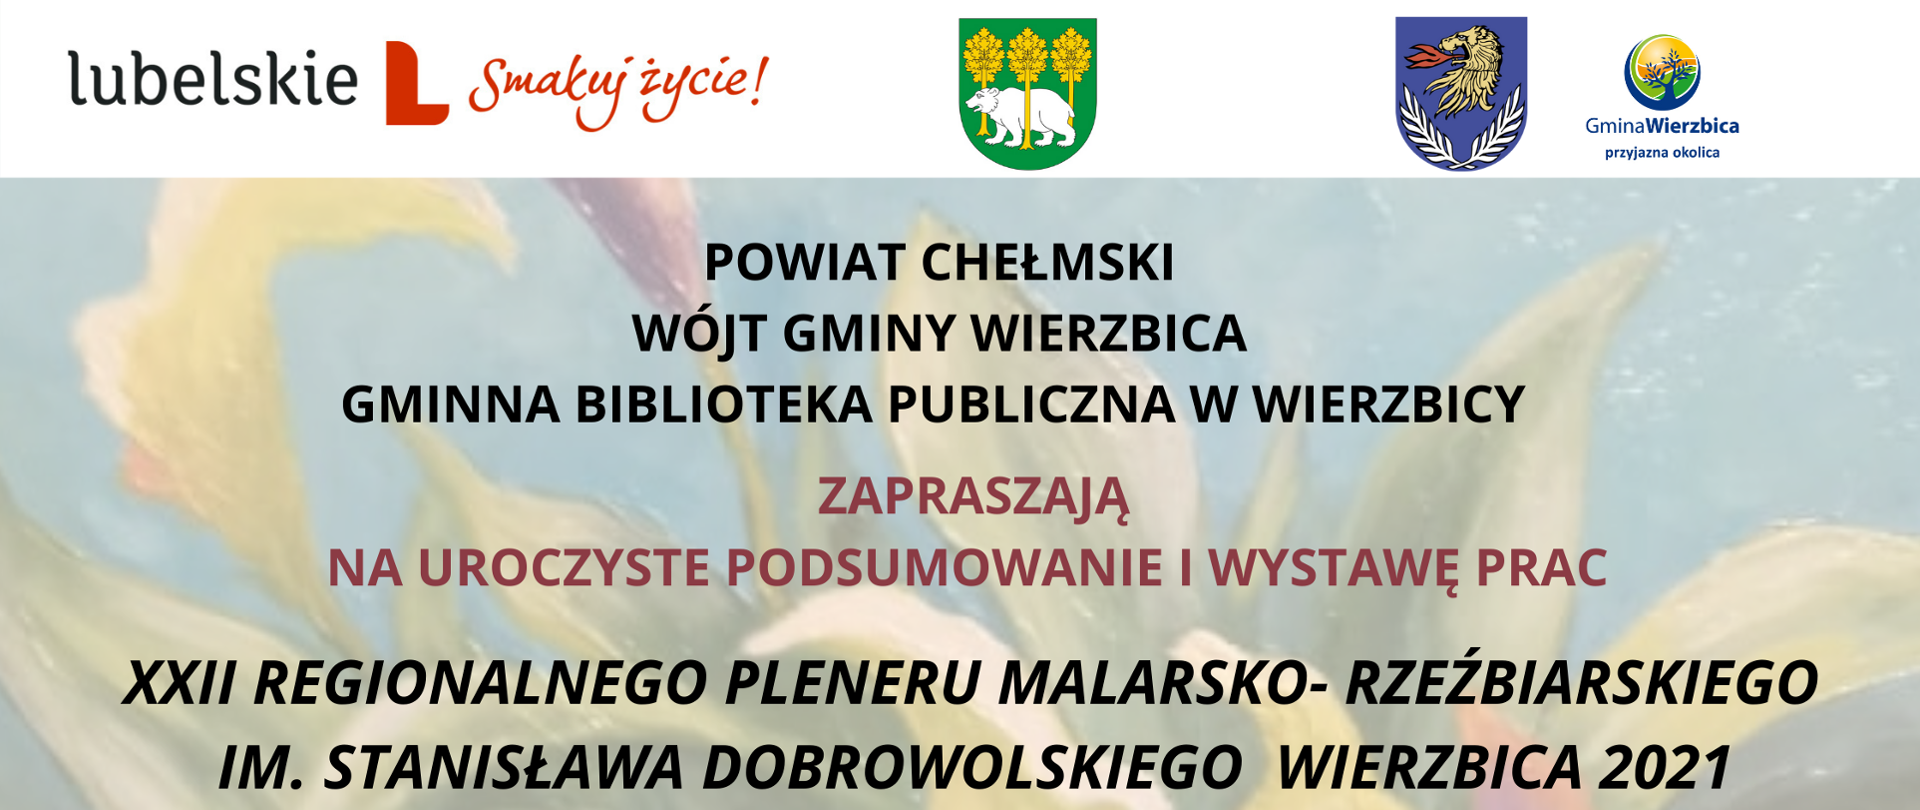 Zaproszenie na podsumowanie i wystawę prac XXII Regionalnego Pleneru Malarsko-Rzeźbiarskiego im. Stanisława Dobrowolskiego Wierzbica 2021